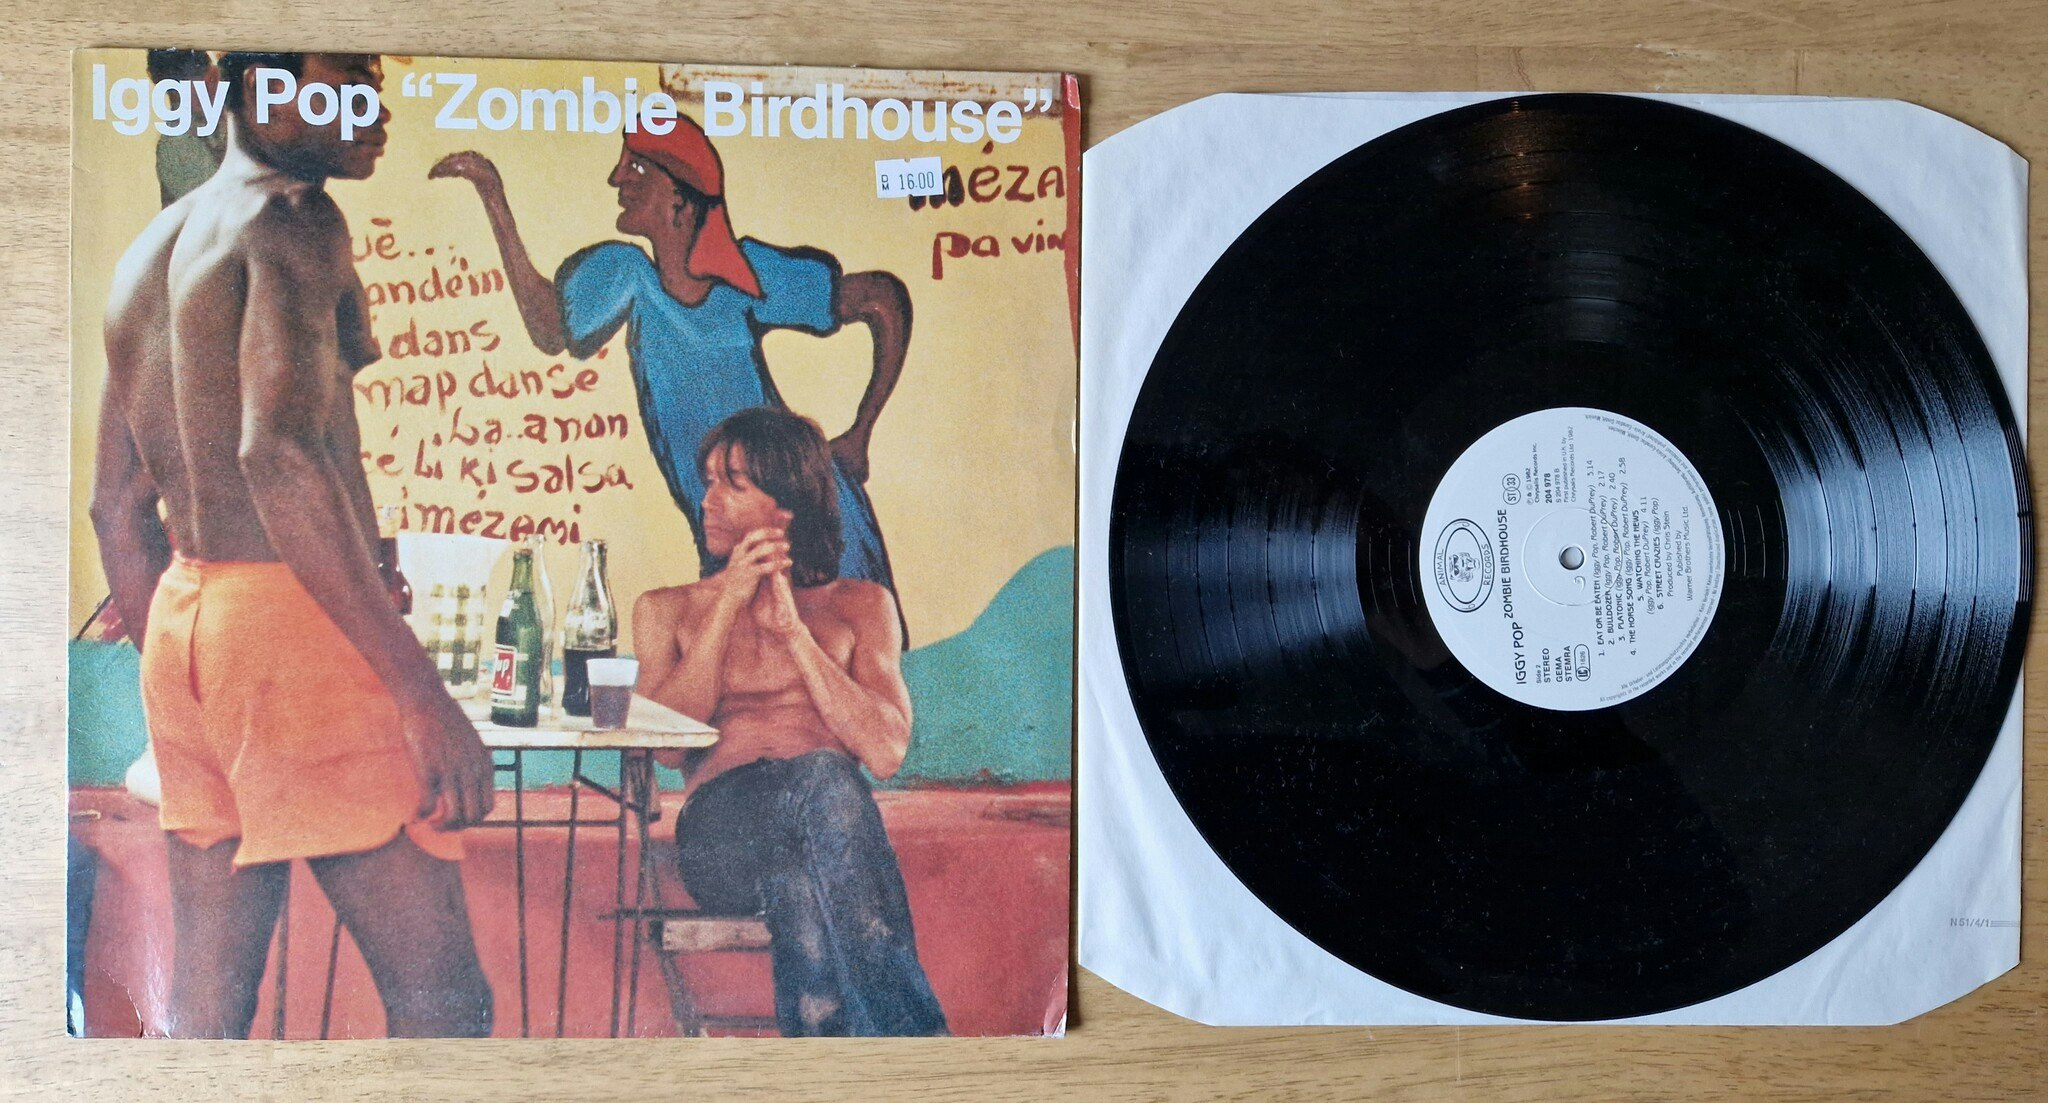 Iggy Pop, Zombie birdhouse. Vinyl LP